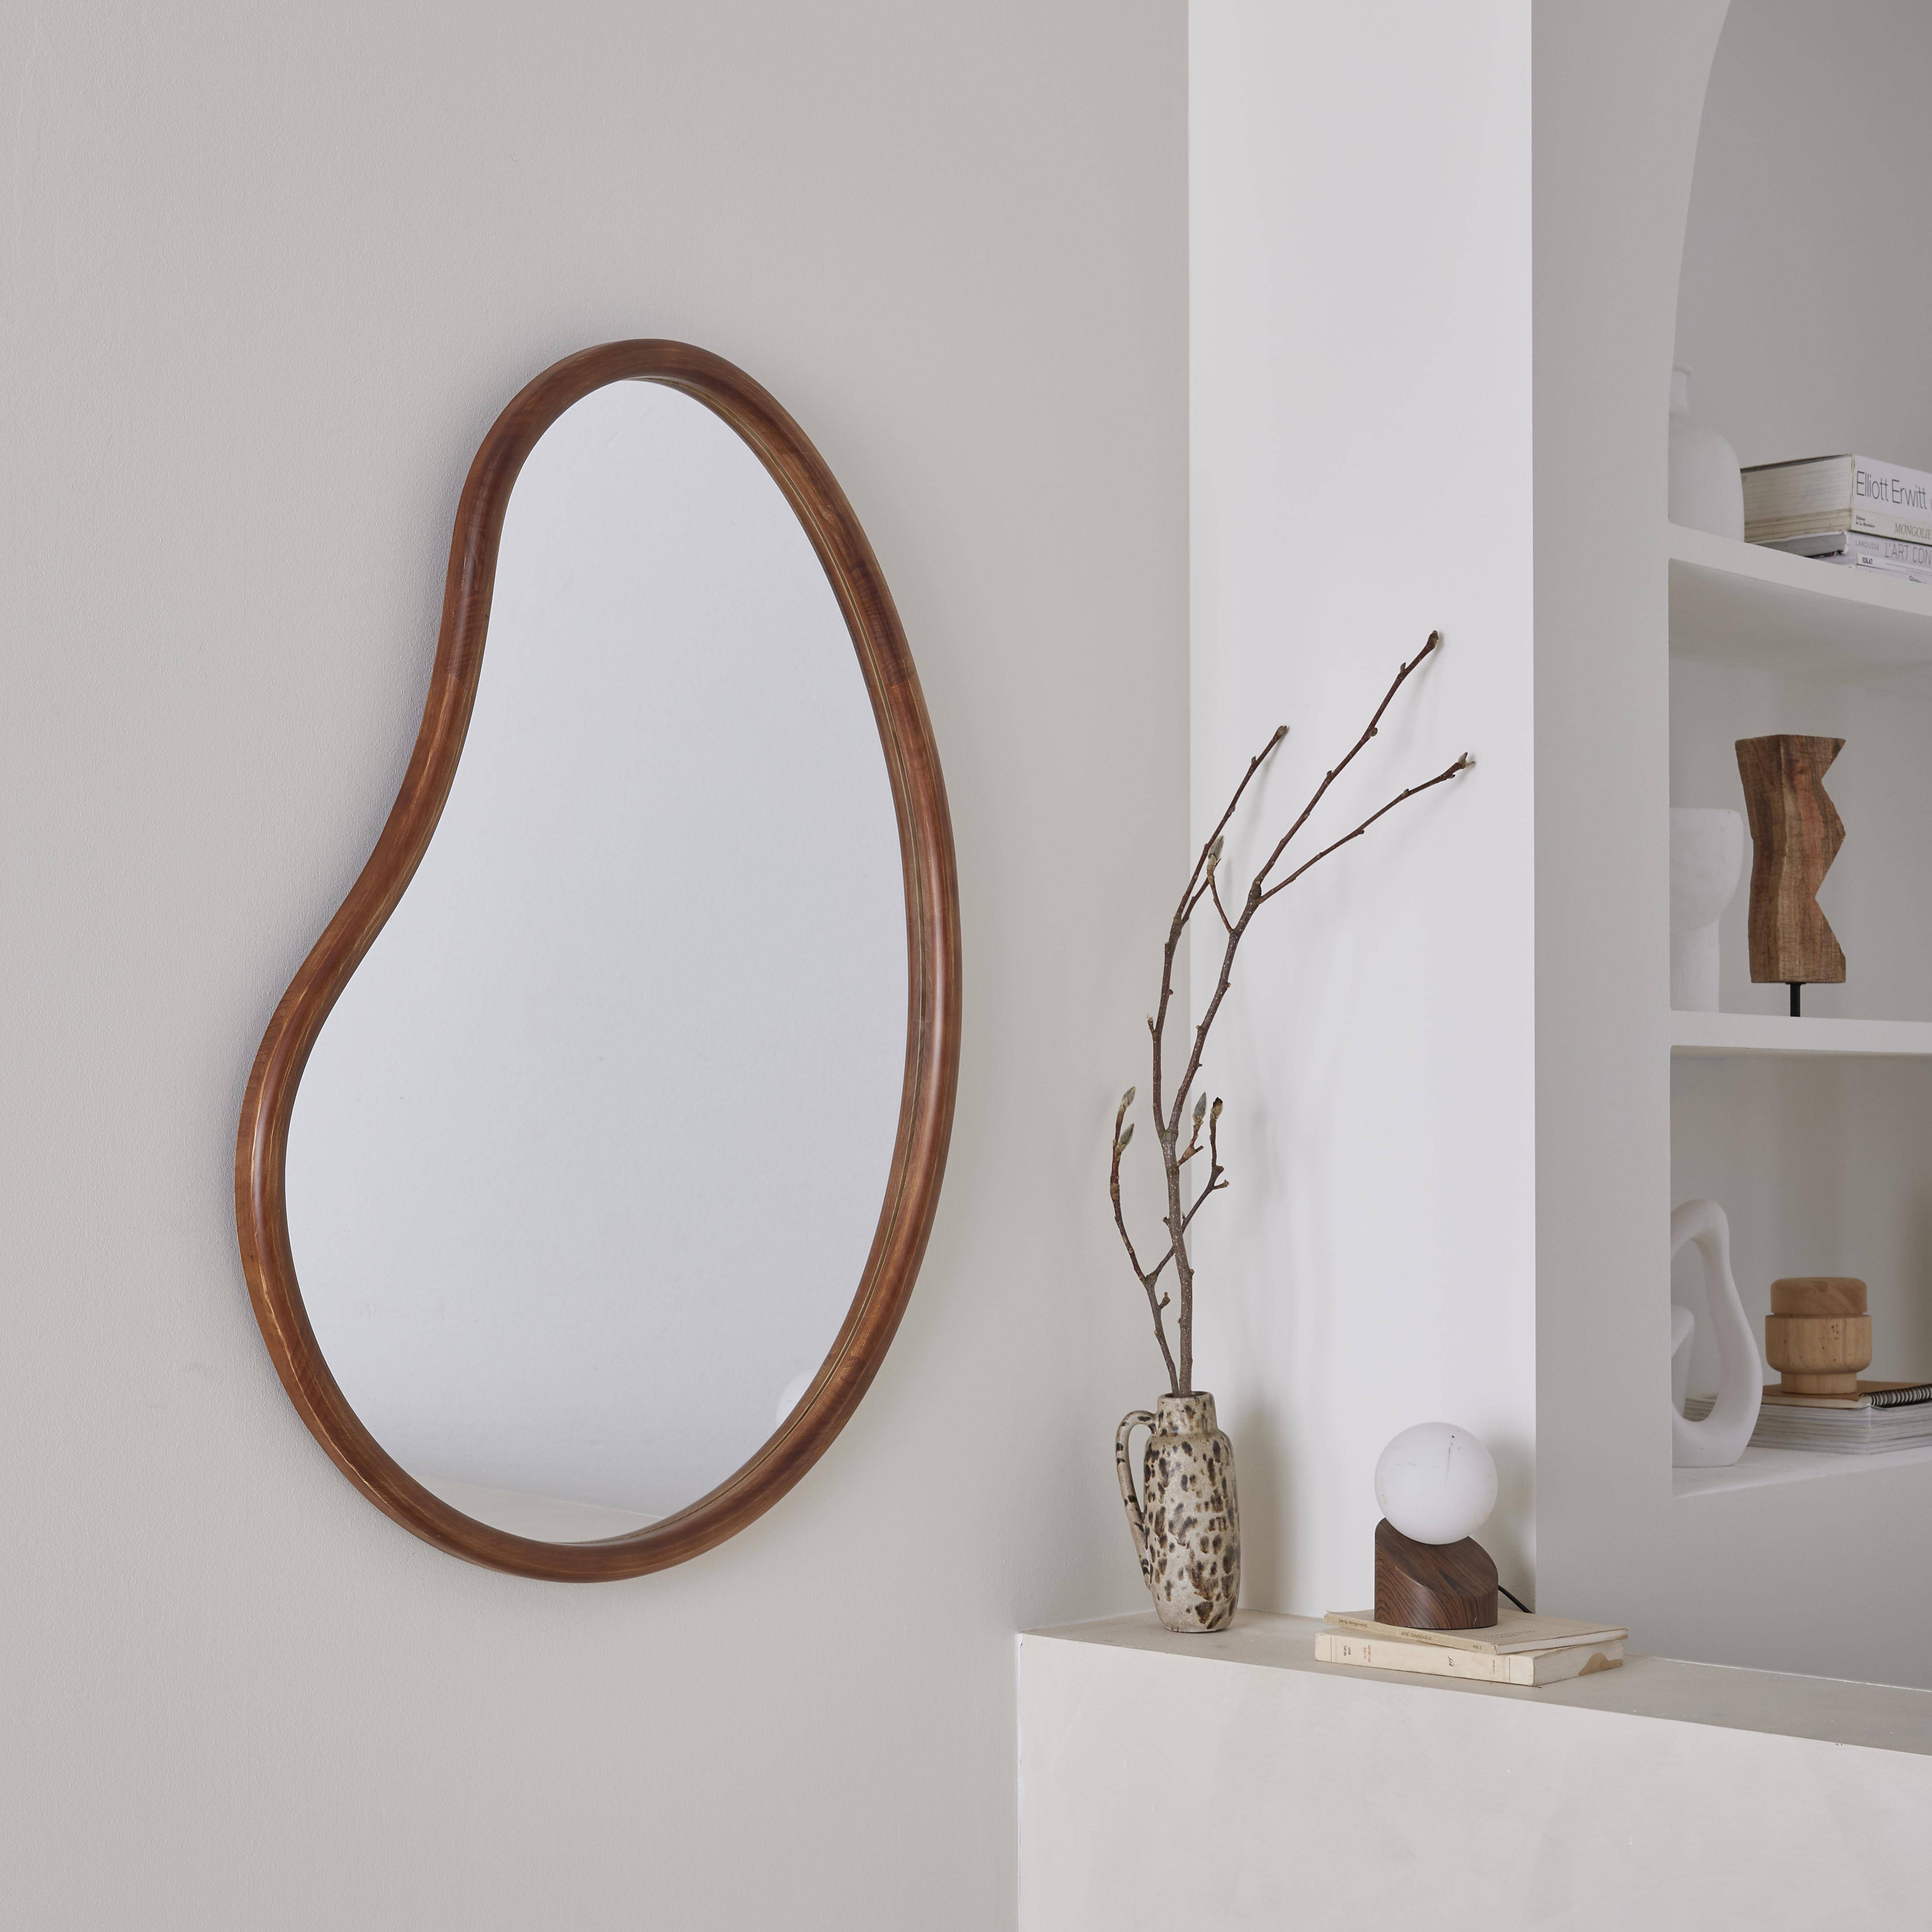 Miroir organique en bois de sapin 95cm épaisseur 3cm coloris noyer idéal entrée, chambre ou salle de bain,sweeek,Photo1